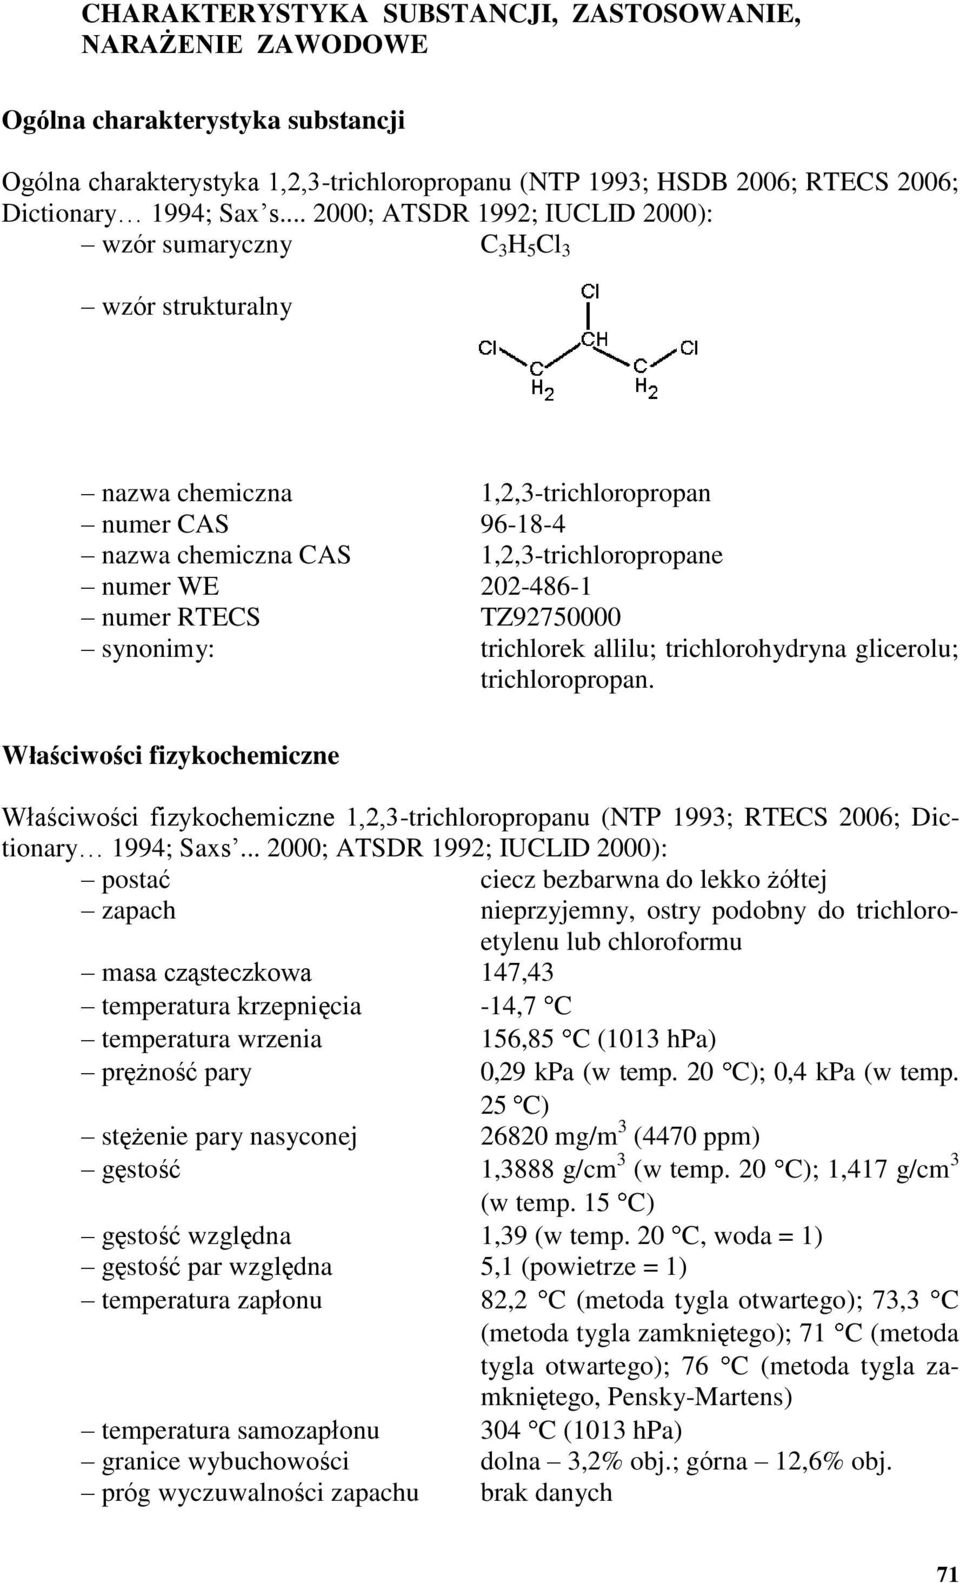 numer RTECS TZ92750000 synonimy: trichlorek allilu; trichlorohydryna glicerolu; trichloropropan.